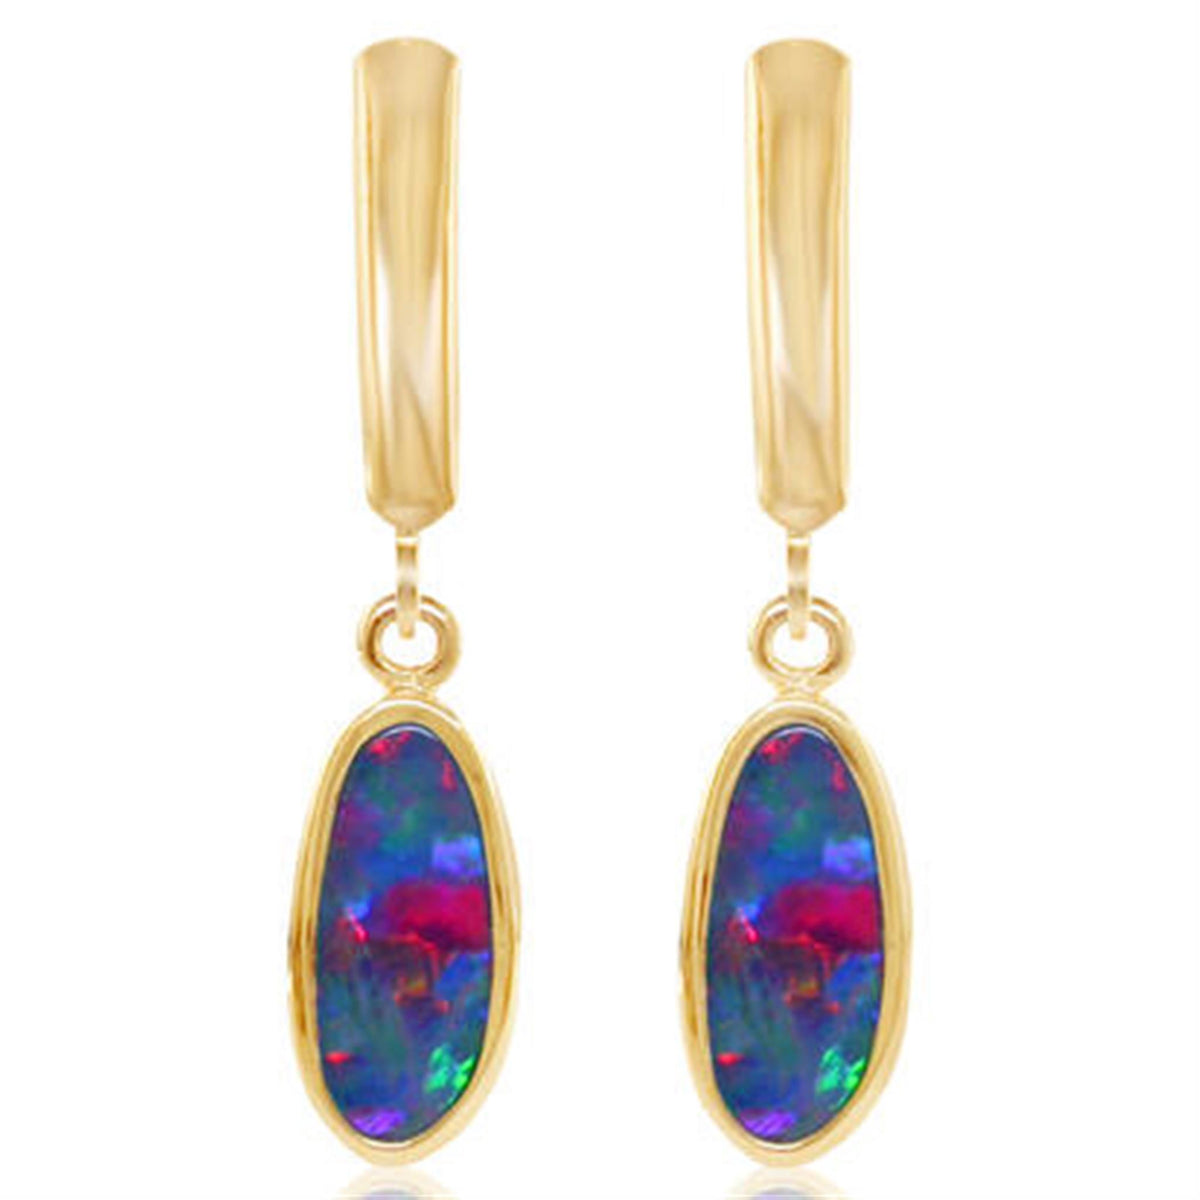 14Kt Yellow Gold Leverback Earrings Gemstone Earrings With Australian Opals